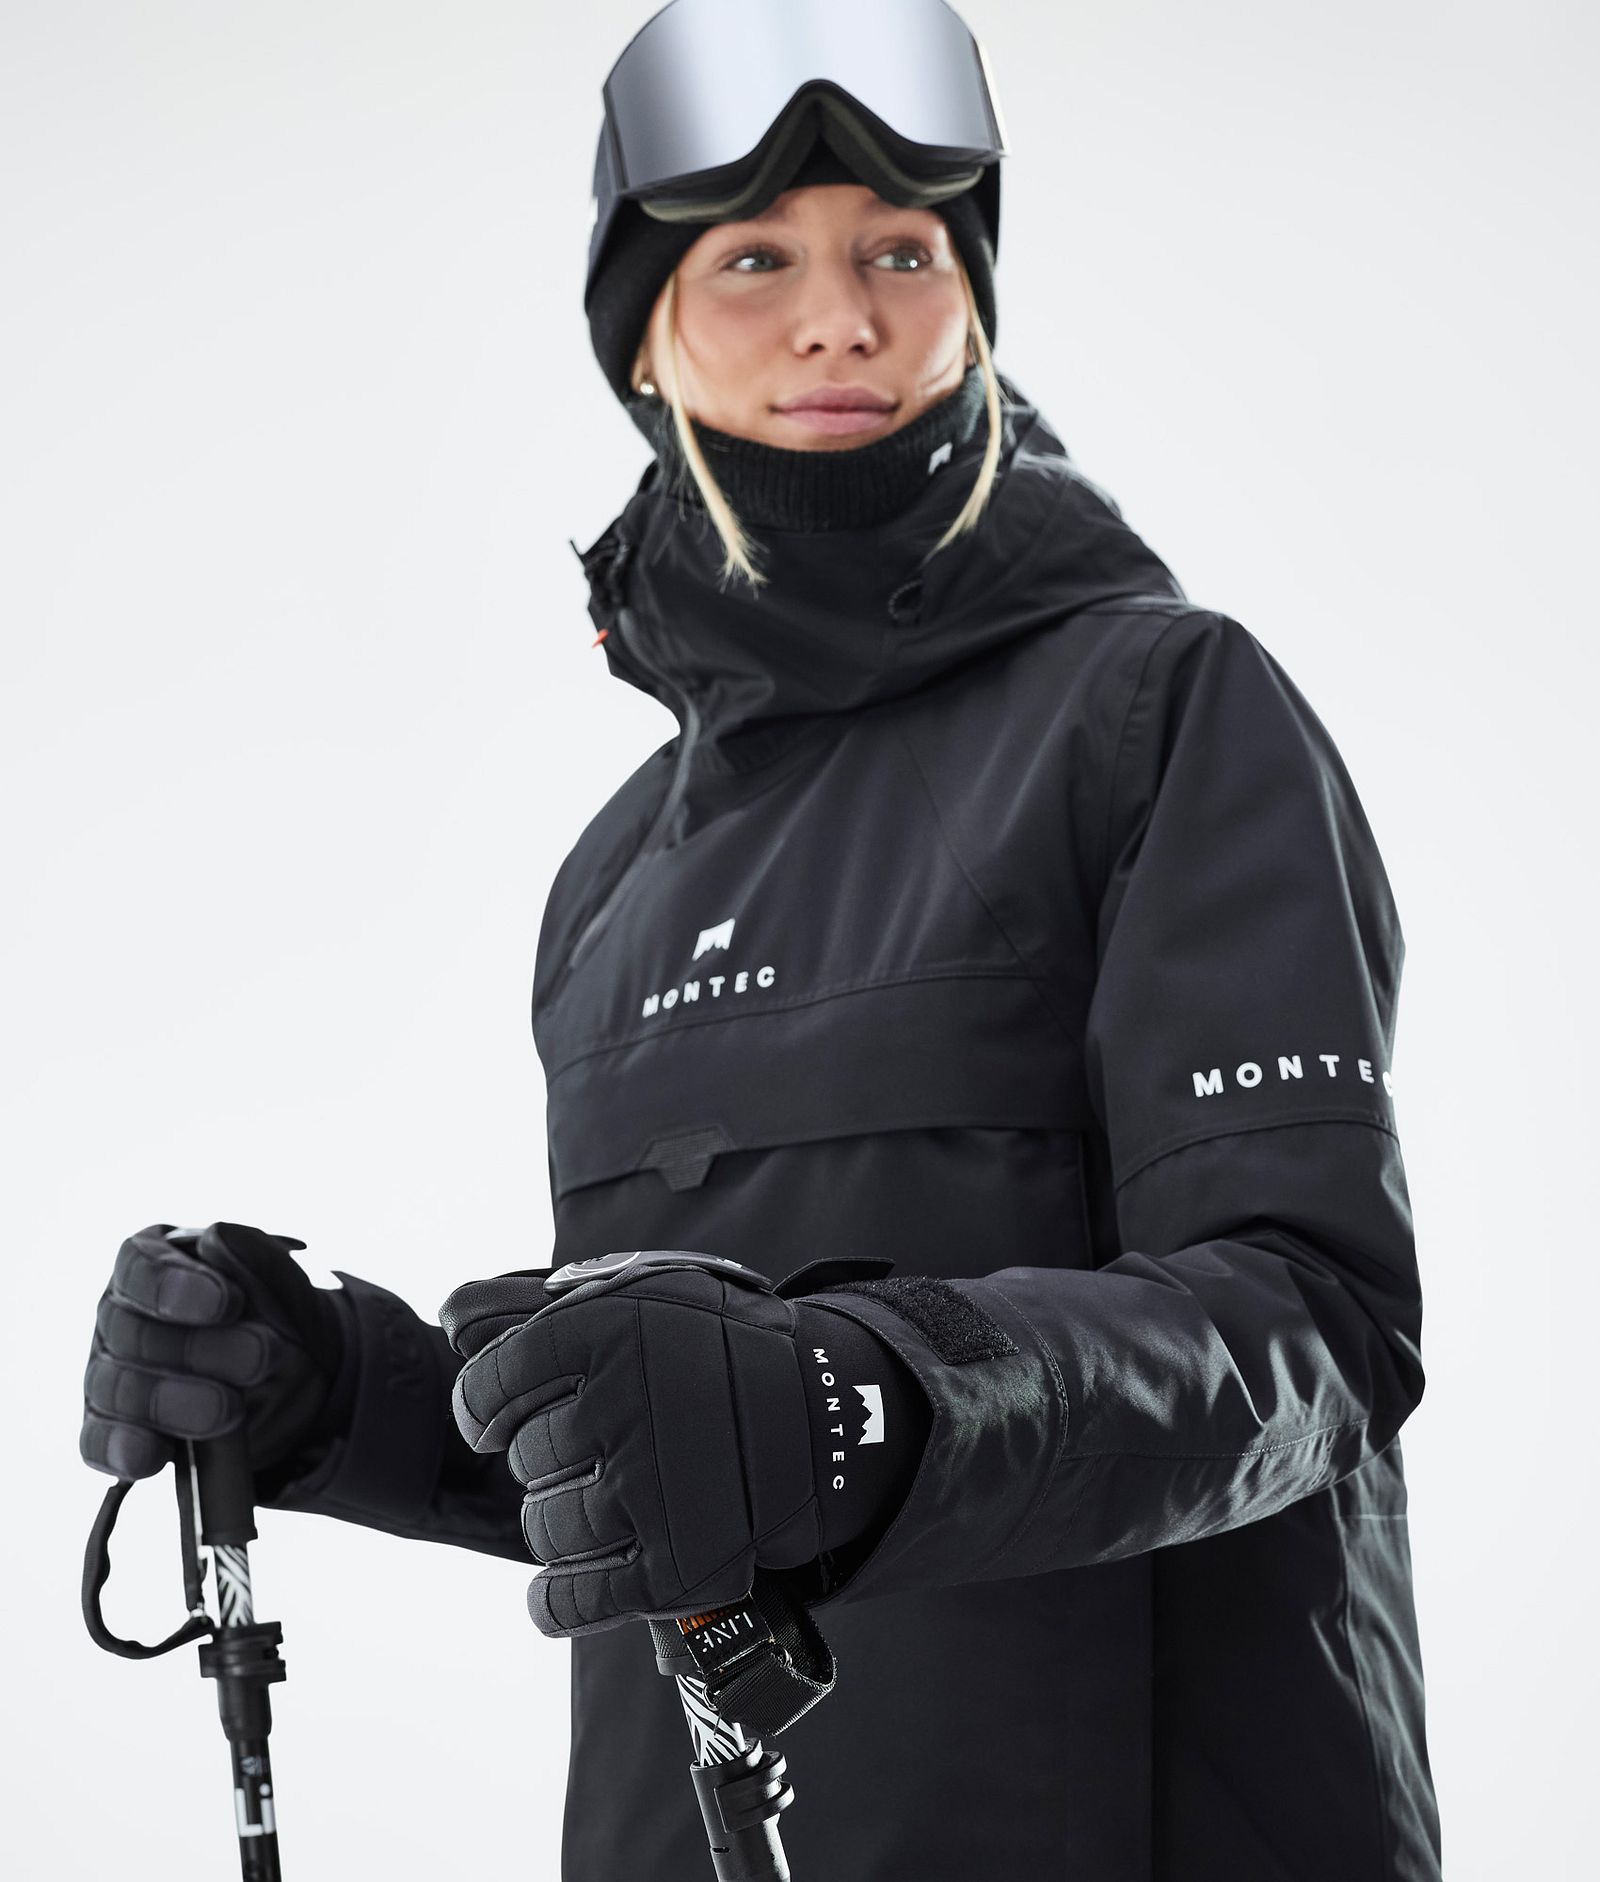 Kilo 2022 Ski Gloves Black, Image 4 of 5